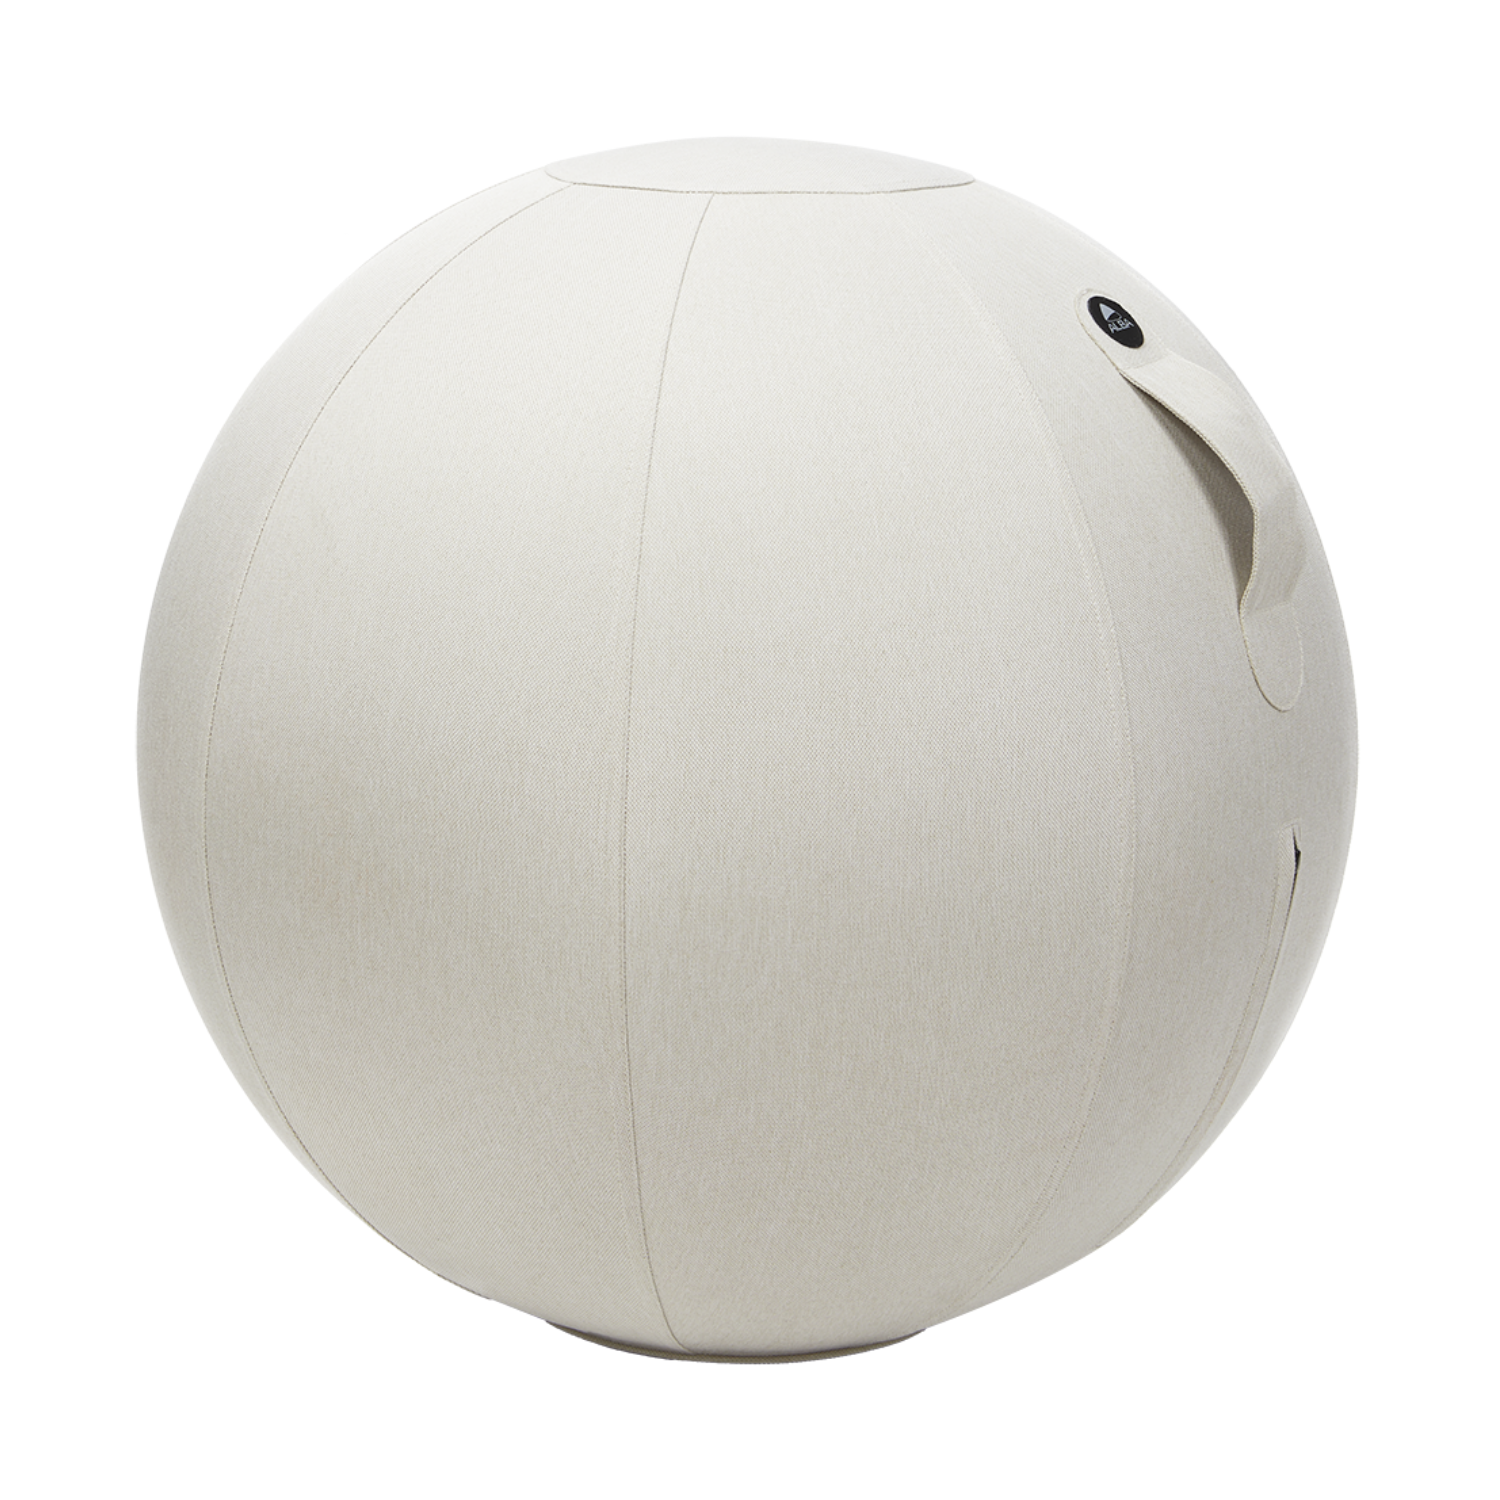 Ballon Siège ergonomique 55 cm avec pieds - Sit'n'Gym - Swiss ball